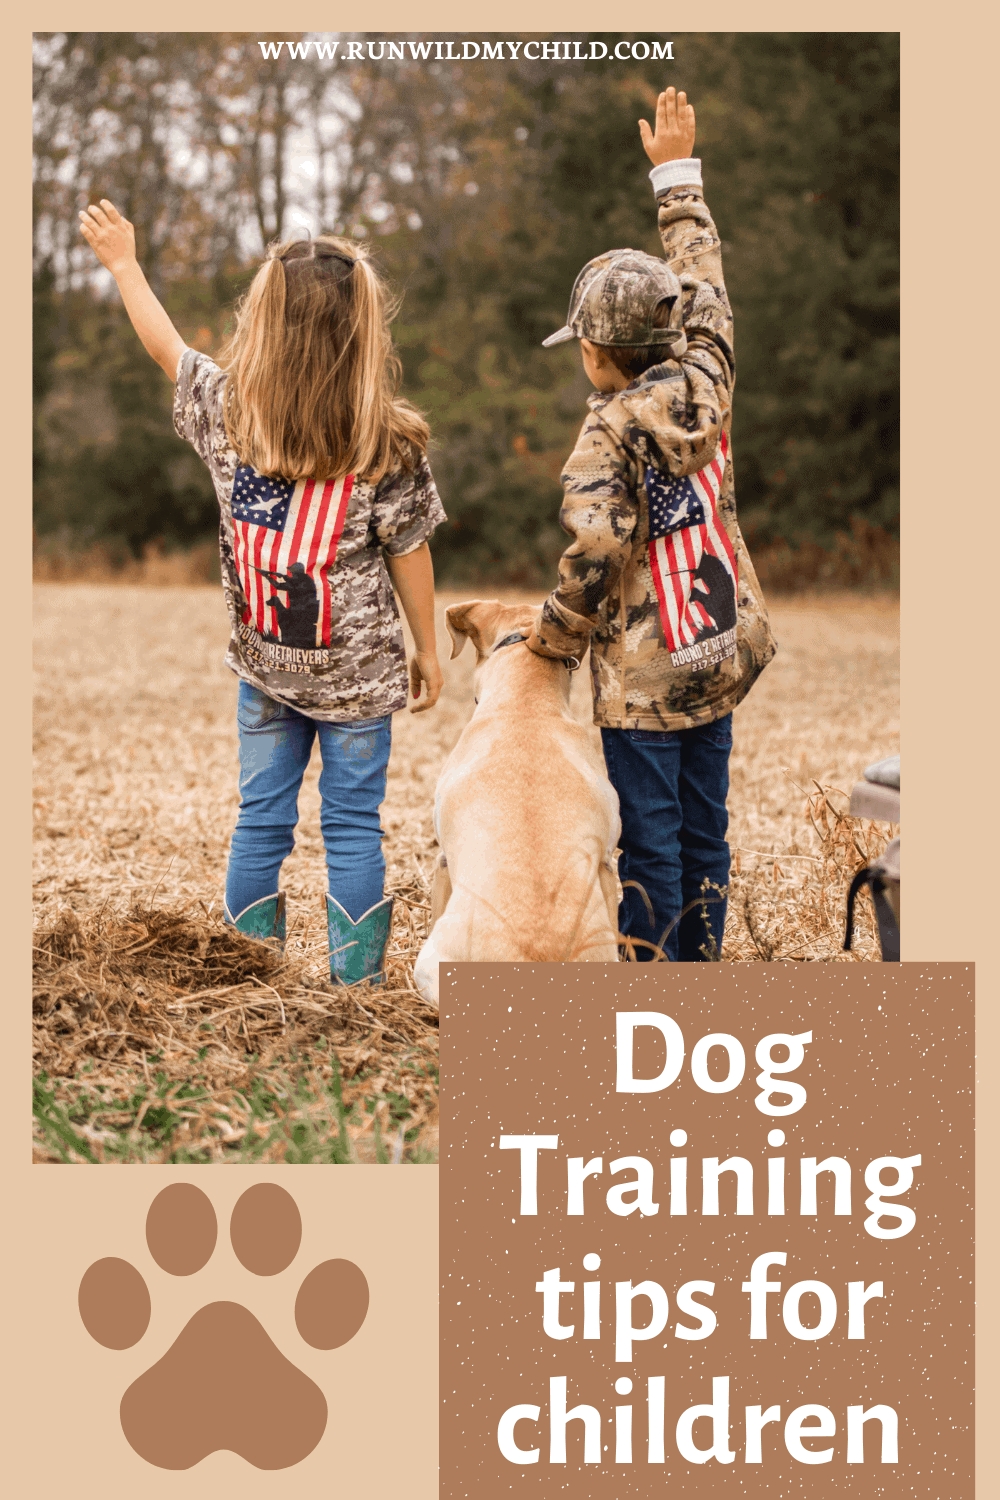 Dog training tips for children 